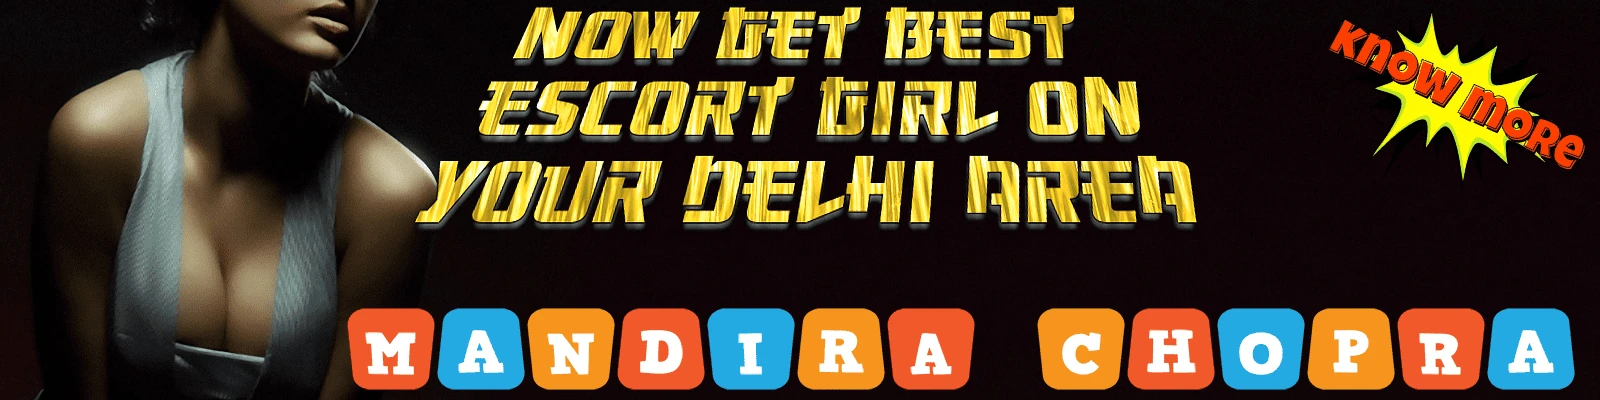 Area Delhi Escorts For Service